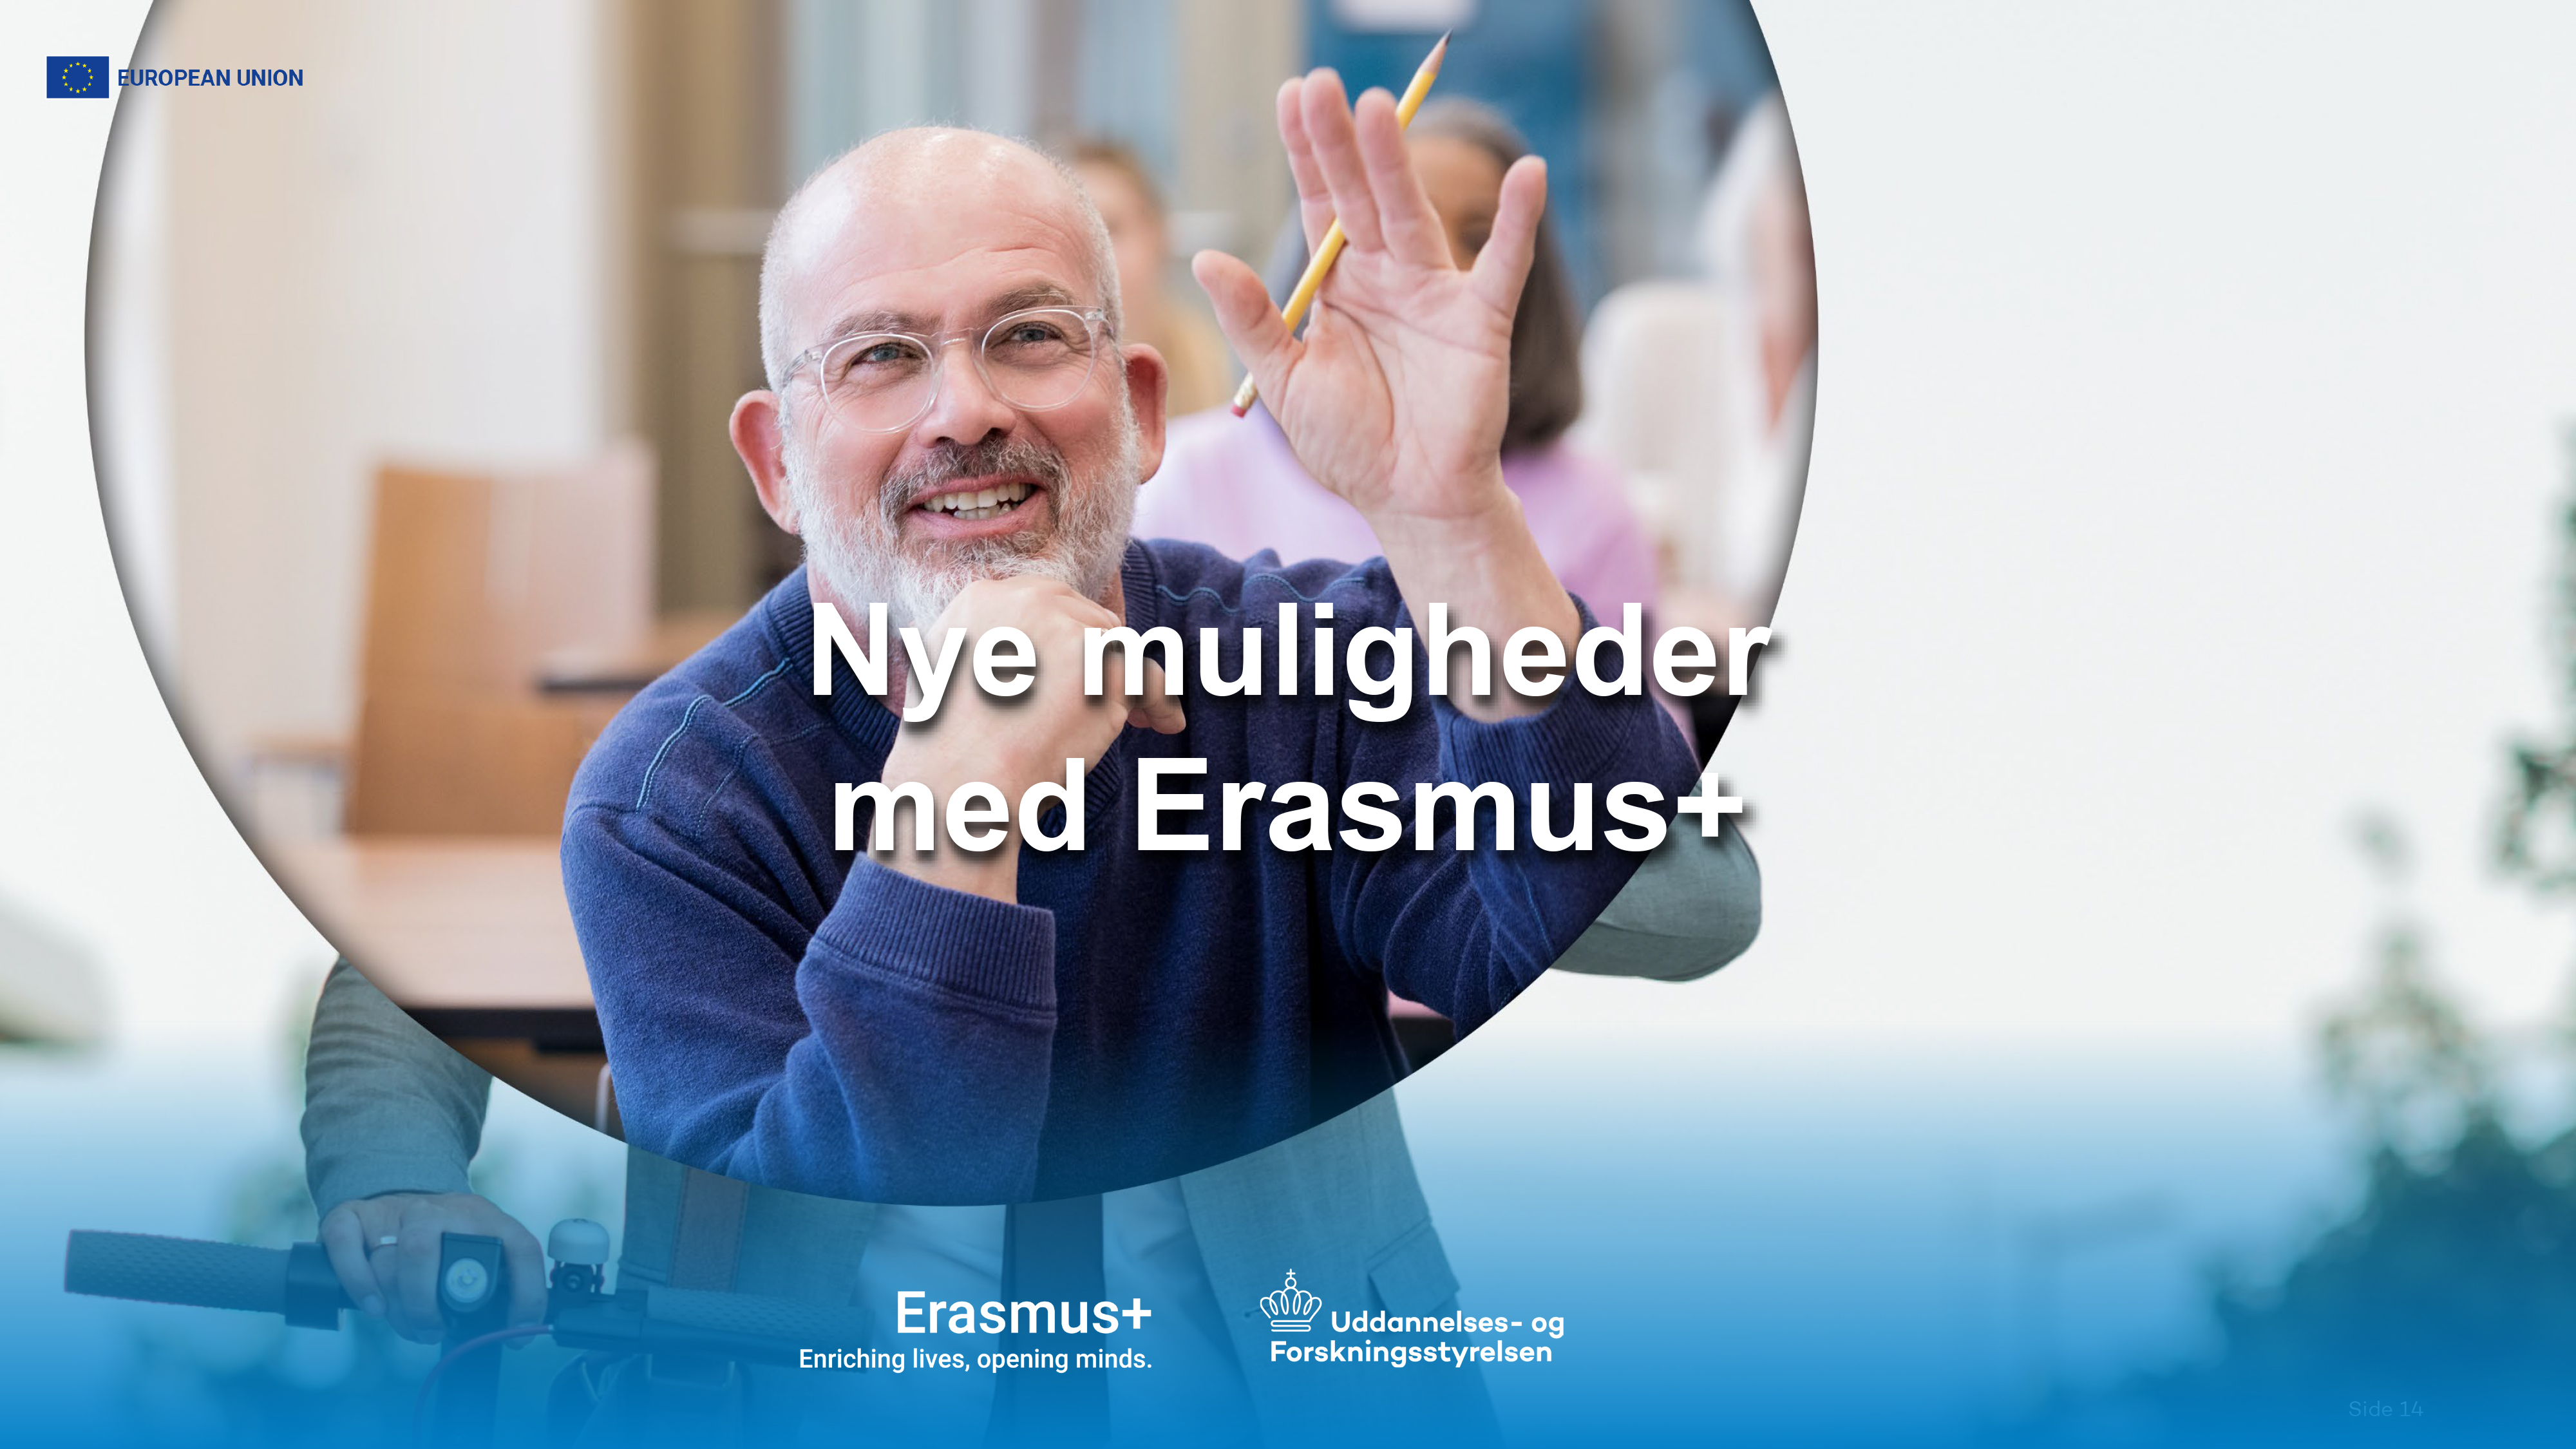 At søge midler fra Erasmus+ kan virke uoverskueligt. Men der er mange penge at hente, hvis man sætter sig ordentlig ind i programmet. To medarbejdere fra Uddannelses- og Forskningsstyrelsen guider her til hvad man kan få ud af det som folkeoplysende organisation. Foto: Uddannelses- og Forskningsstyrelsen.